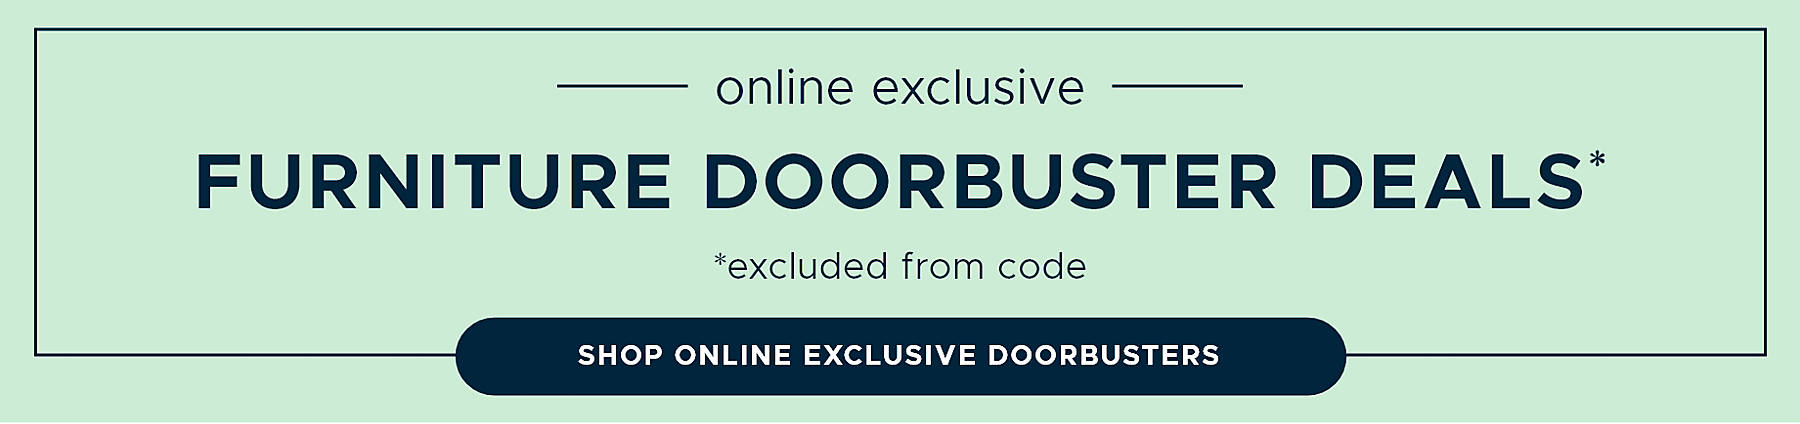 Online Exclusive Furniture Doorbuster Deals* *excluded from code Shop Online Exclusive Doorbusters